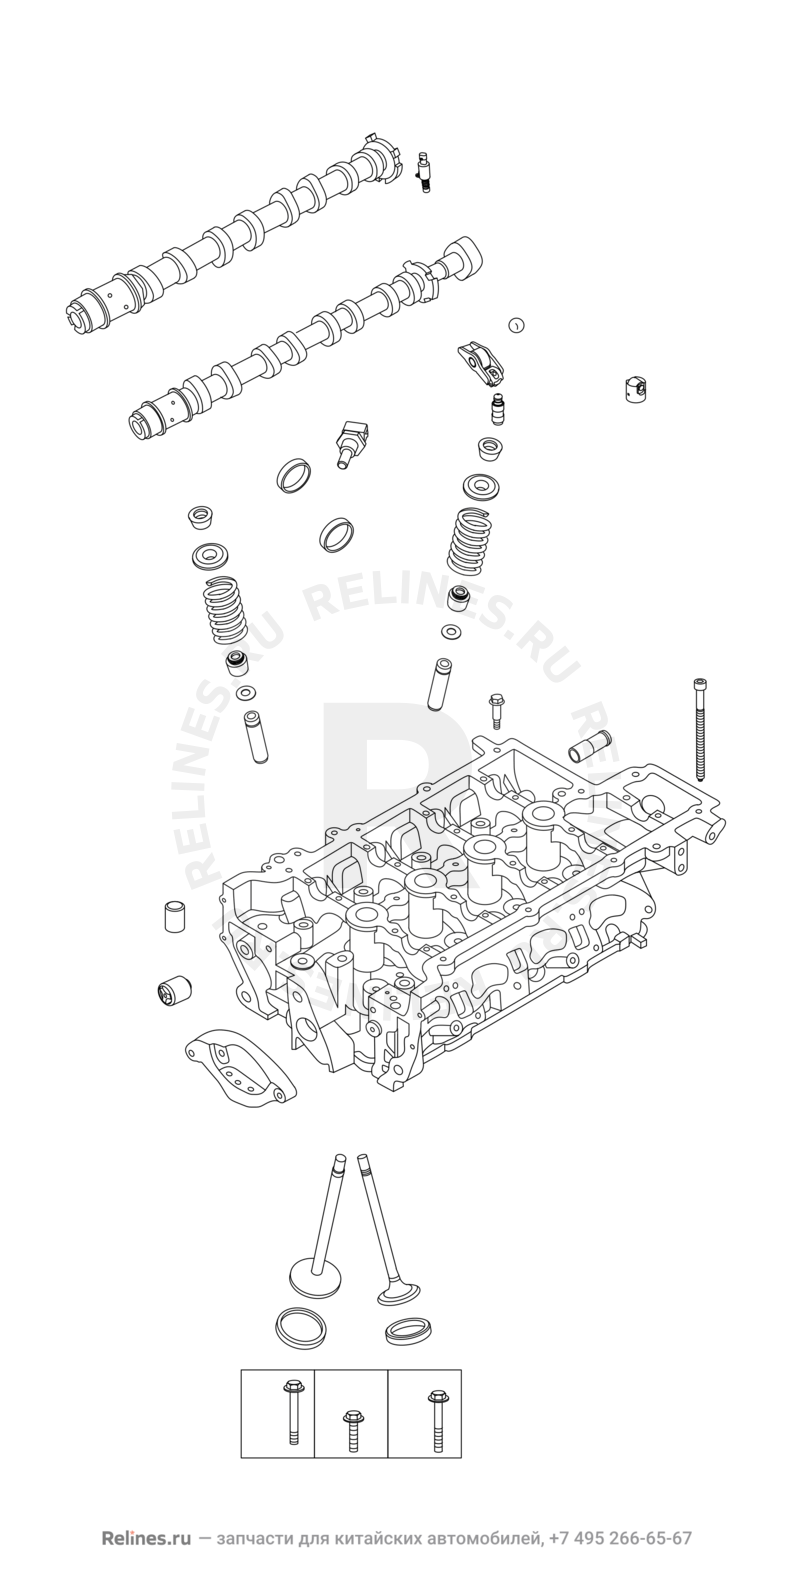 Запчасти Chery Tiggo 8 Pro Поколение I (2020)  — Головка блока цилиндров — схема